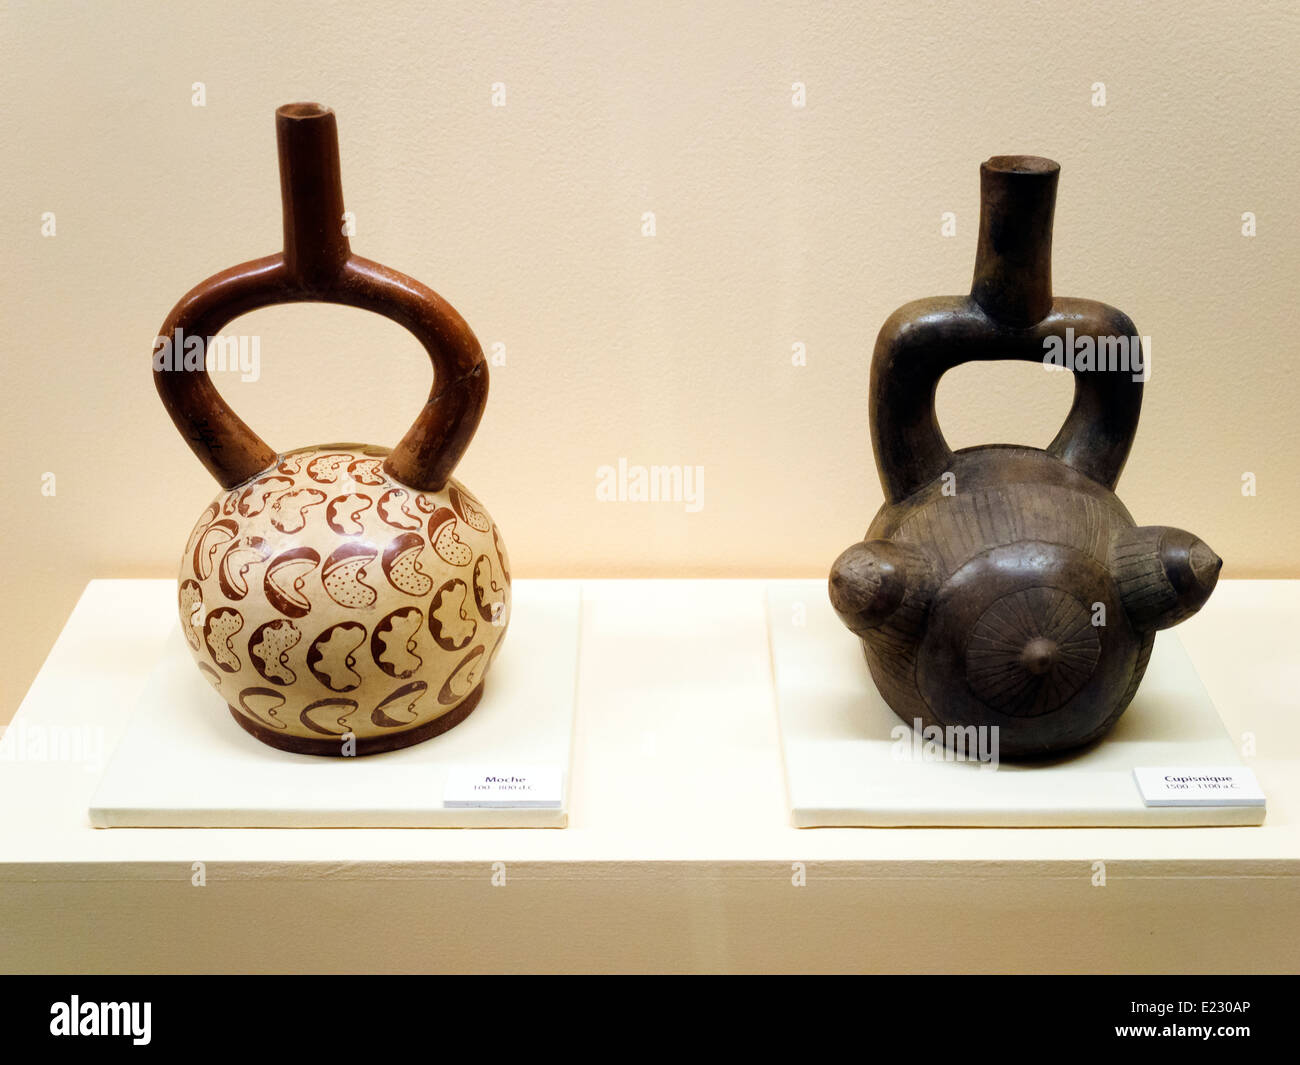 Les navires de l'étrier et AD 100-800 Moche Cupinisque 1500-1100 BC Museo de la Nación Collection Lima, Pérou Banque D'Images